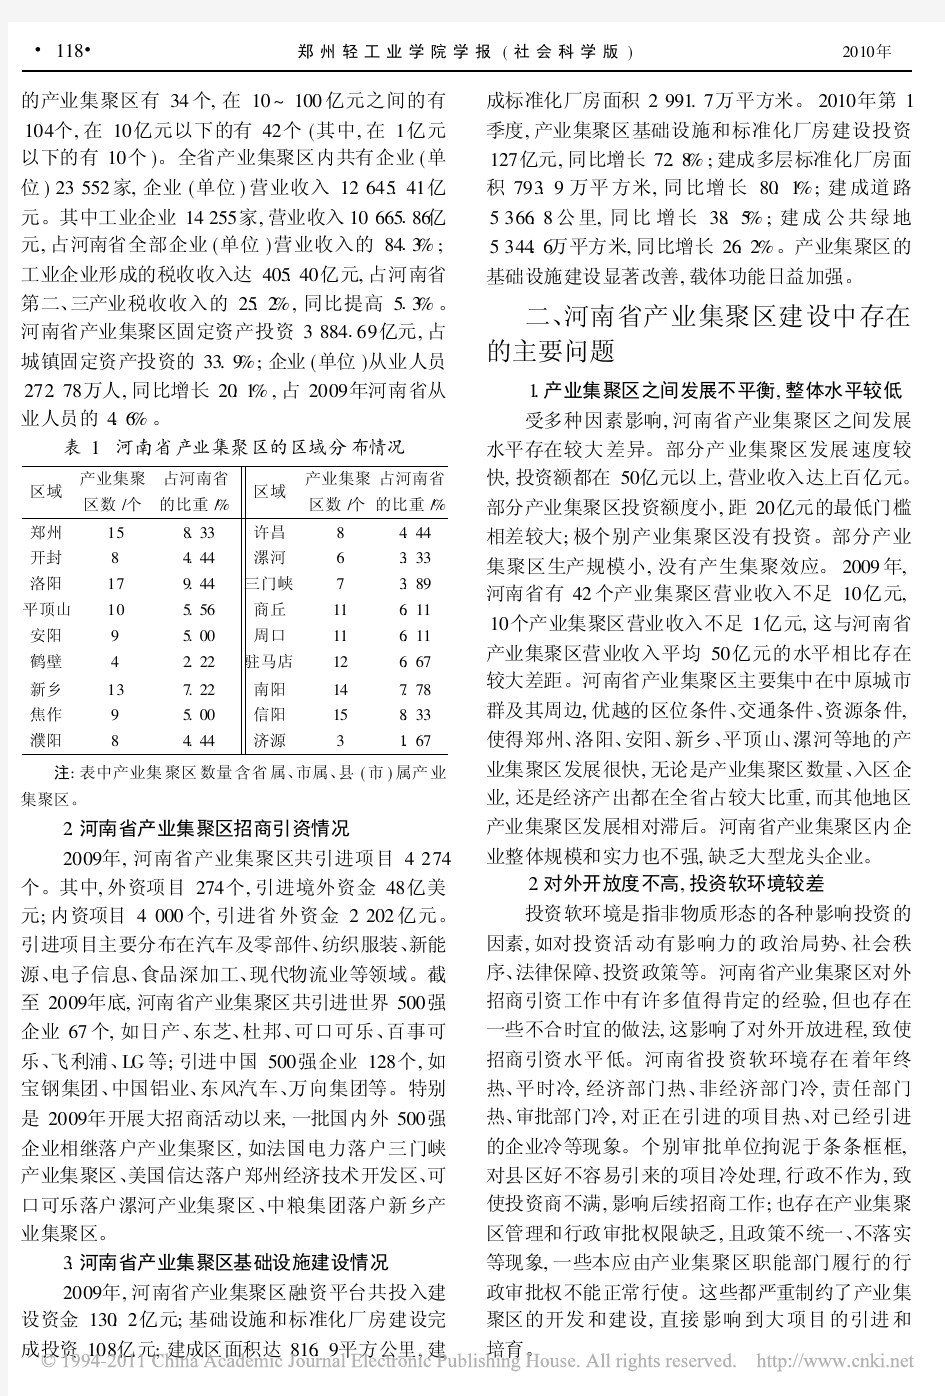 河南省产业集聚区发展现状及对策建议_王红伟